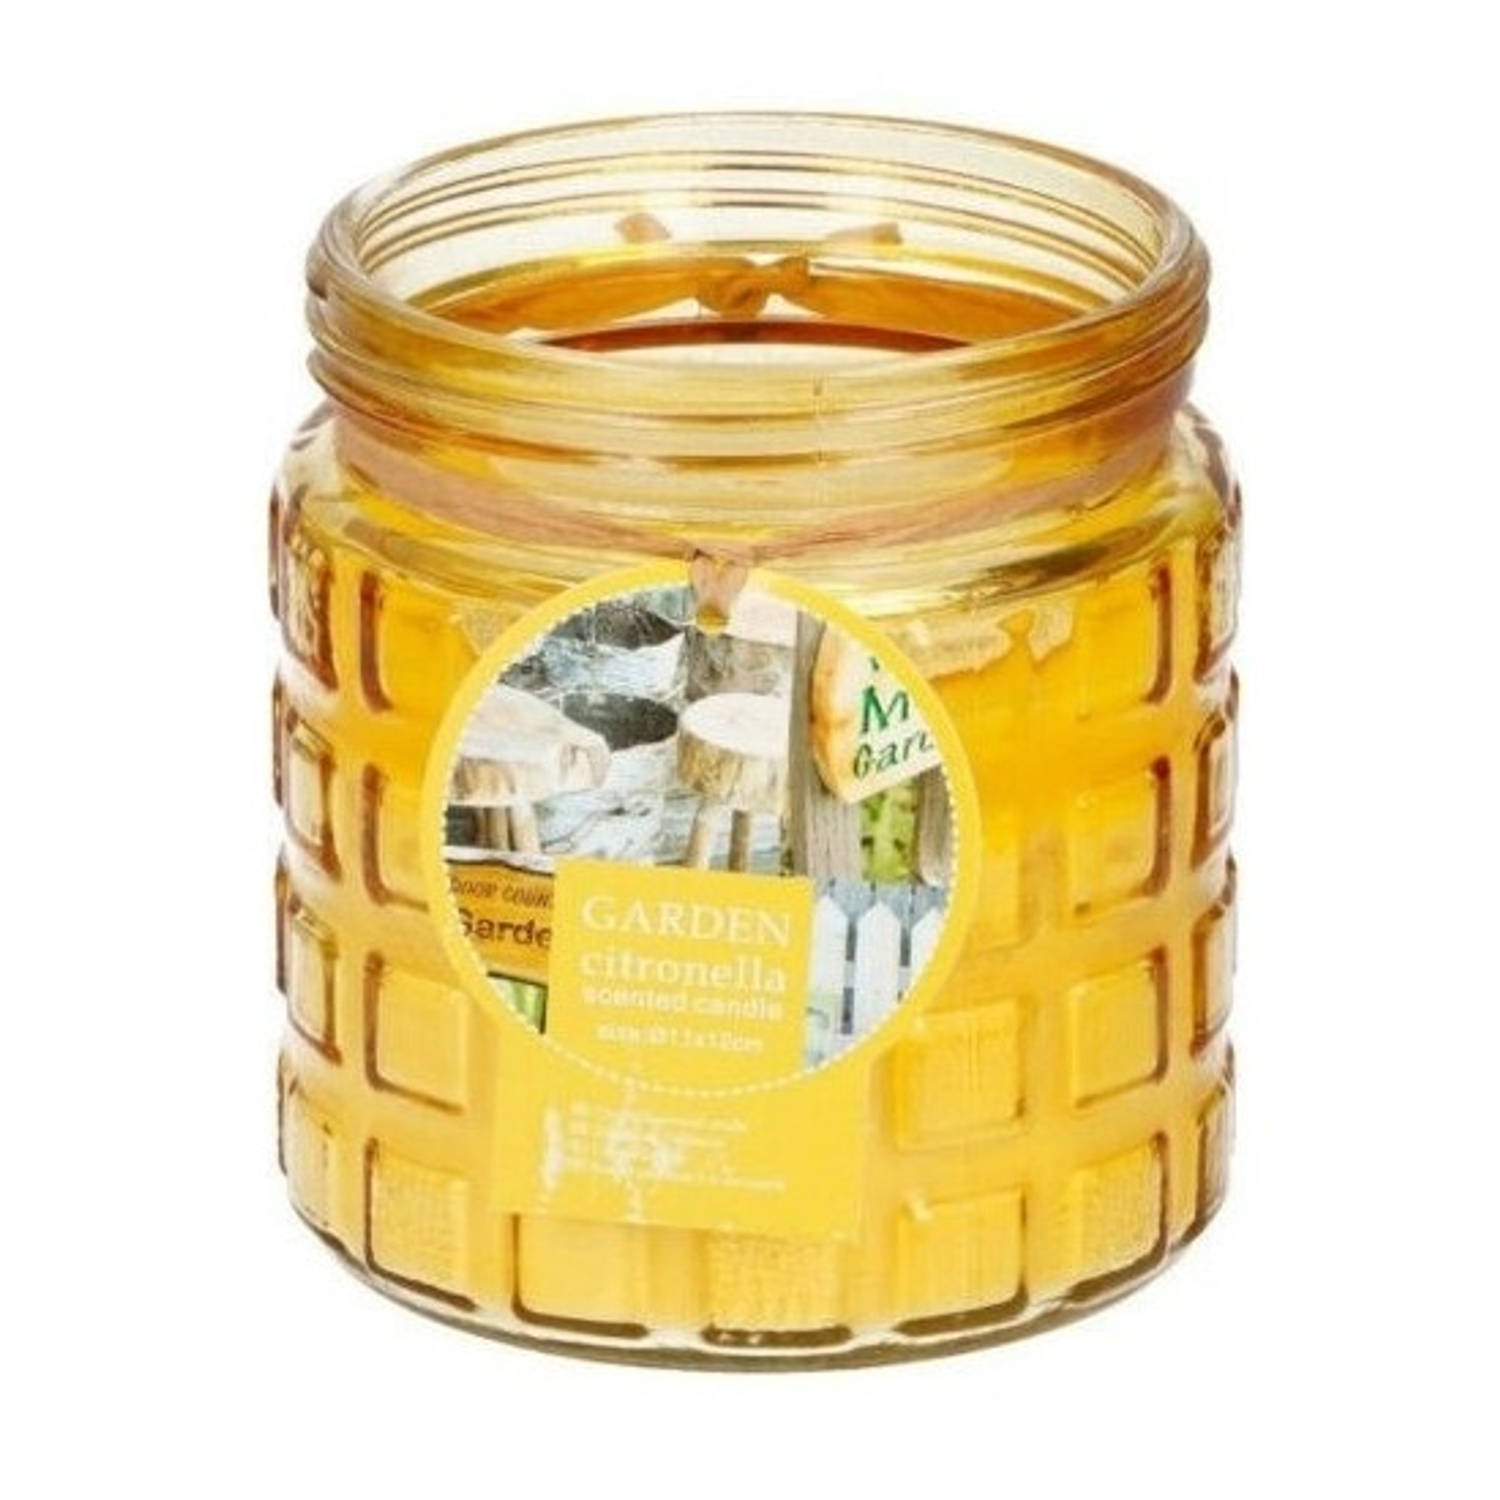 Certificaat kiezen Toestand 2x stuks citronella kaarsen tegen insecten in glazen pot 12 cm geel -  geurkaarsen | Blokker